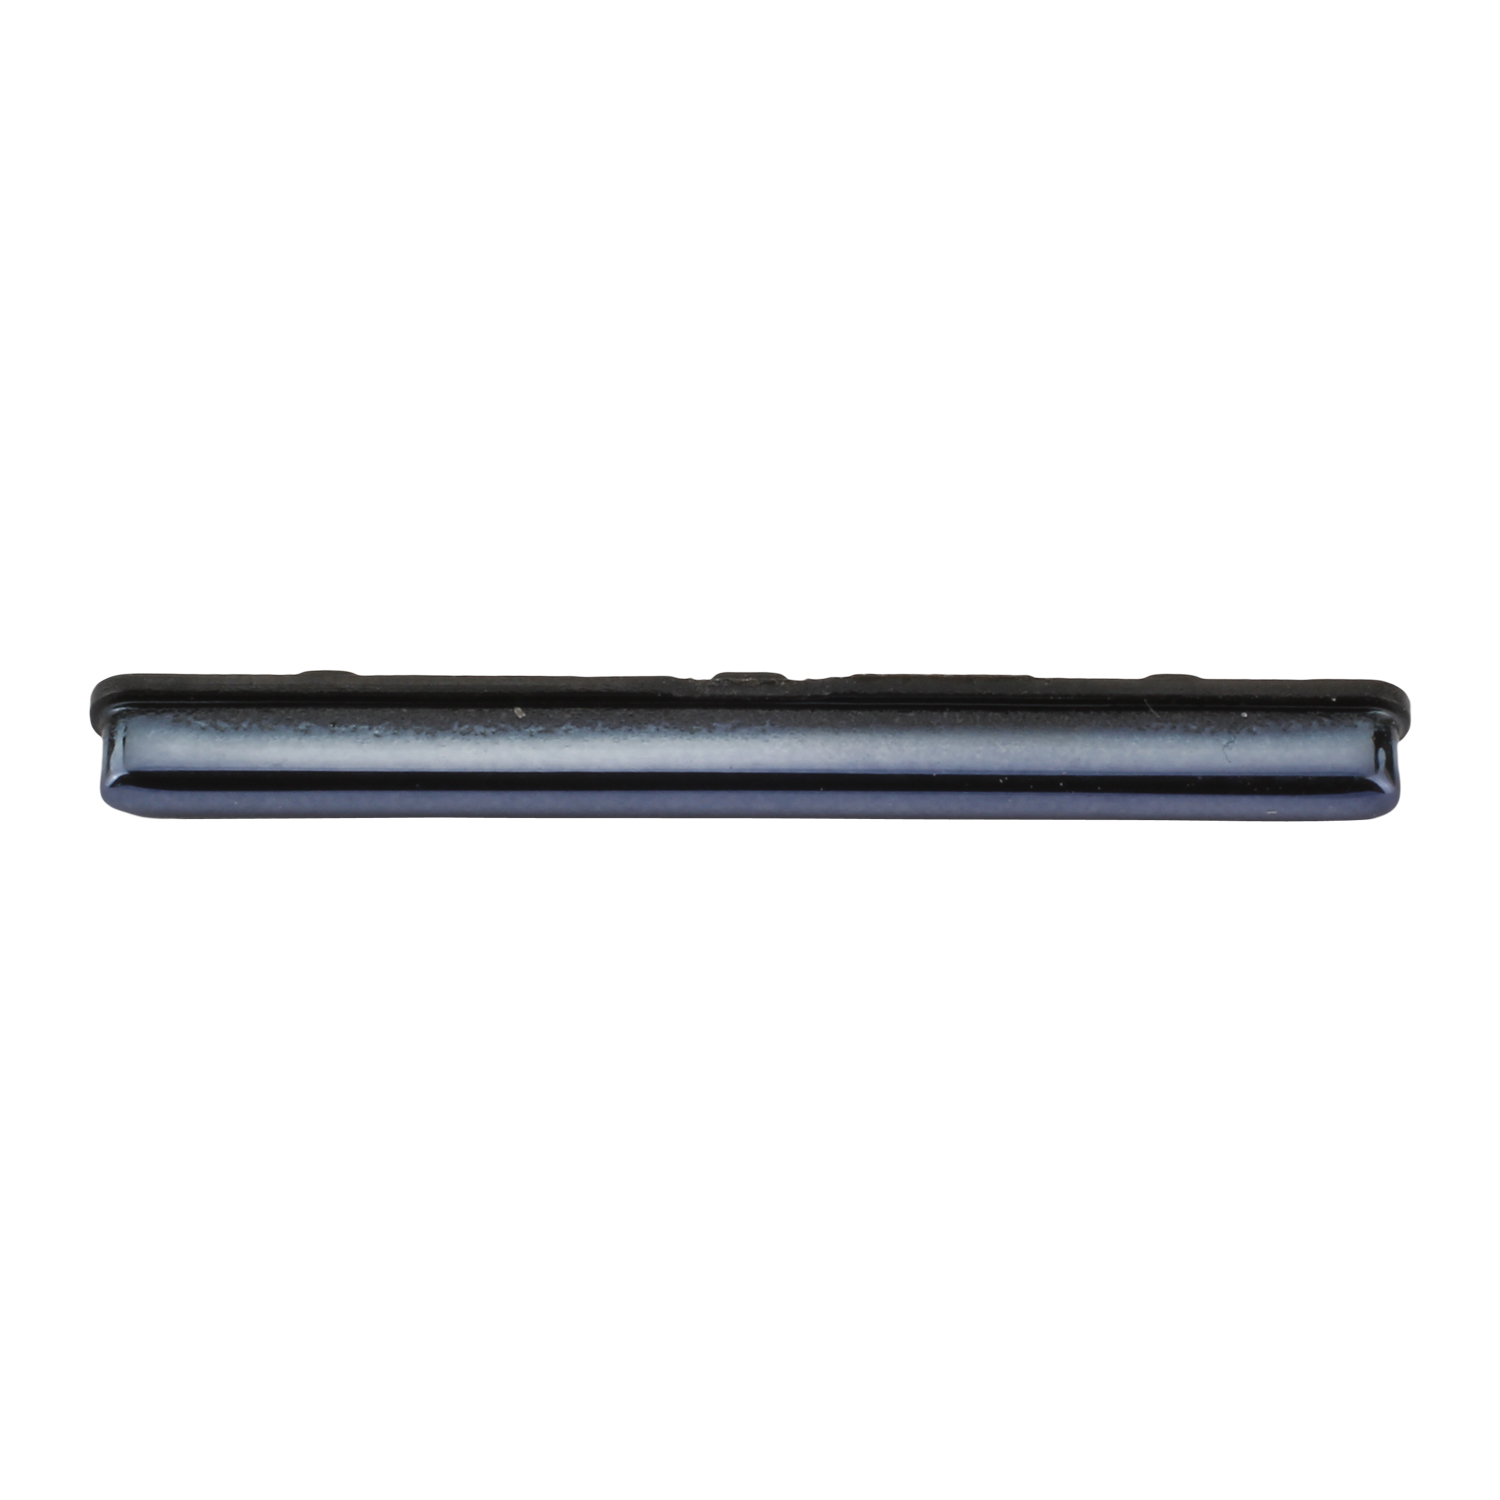 Samsung Galaxy A51 A515F Volume Key, Prism Crush Black